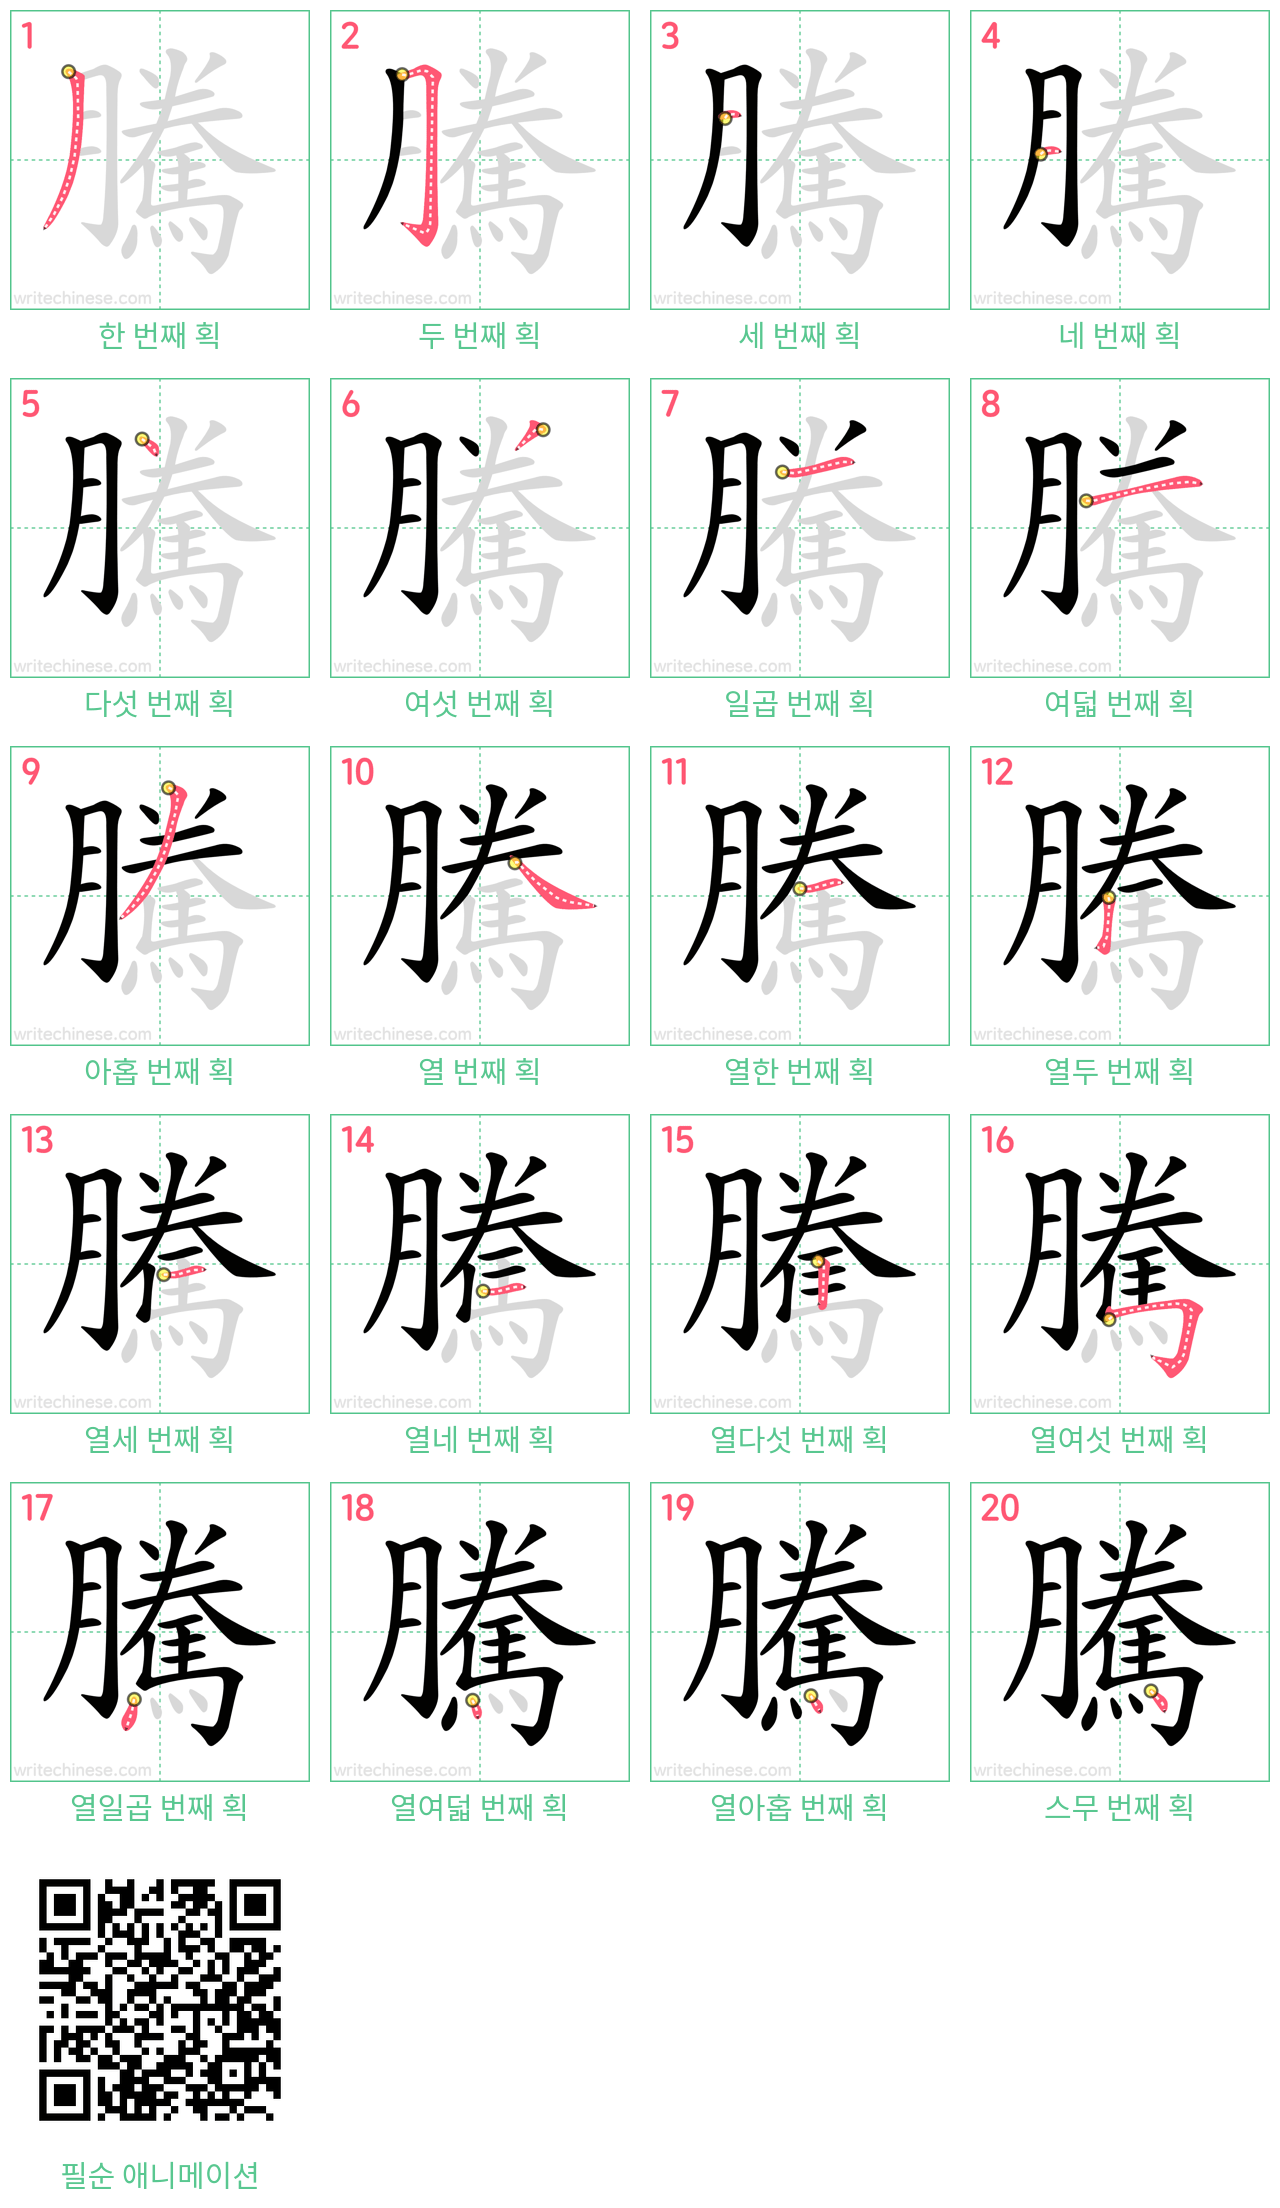 騰 step-by-step stroke order diagrams